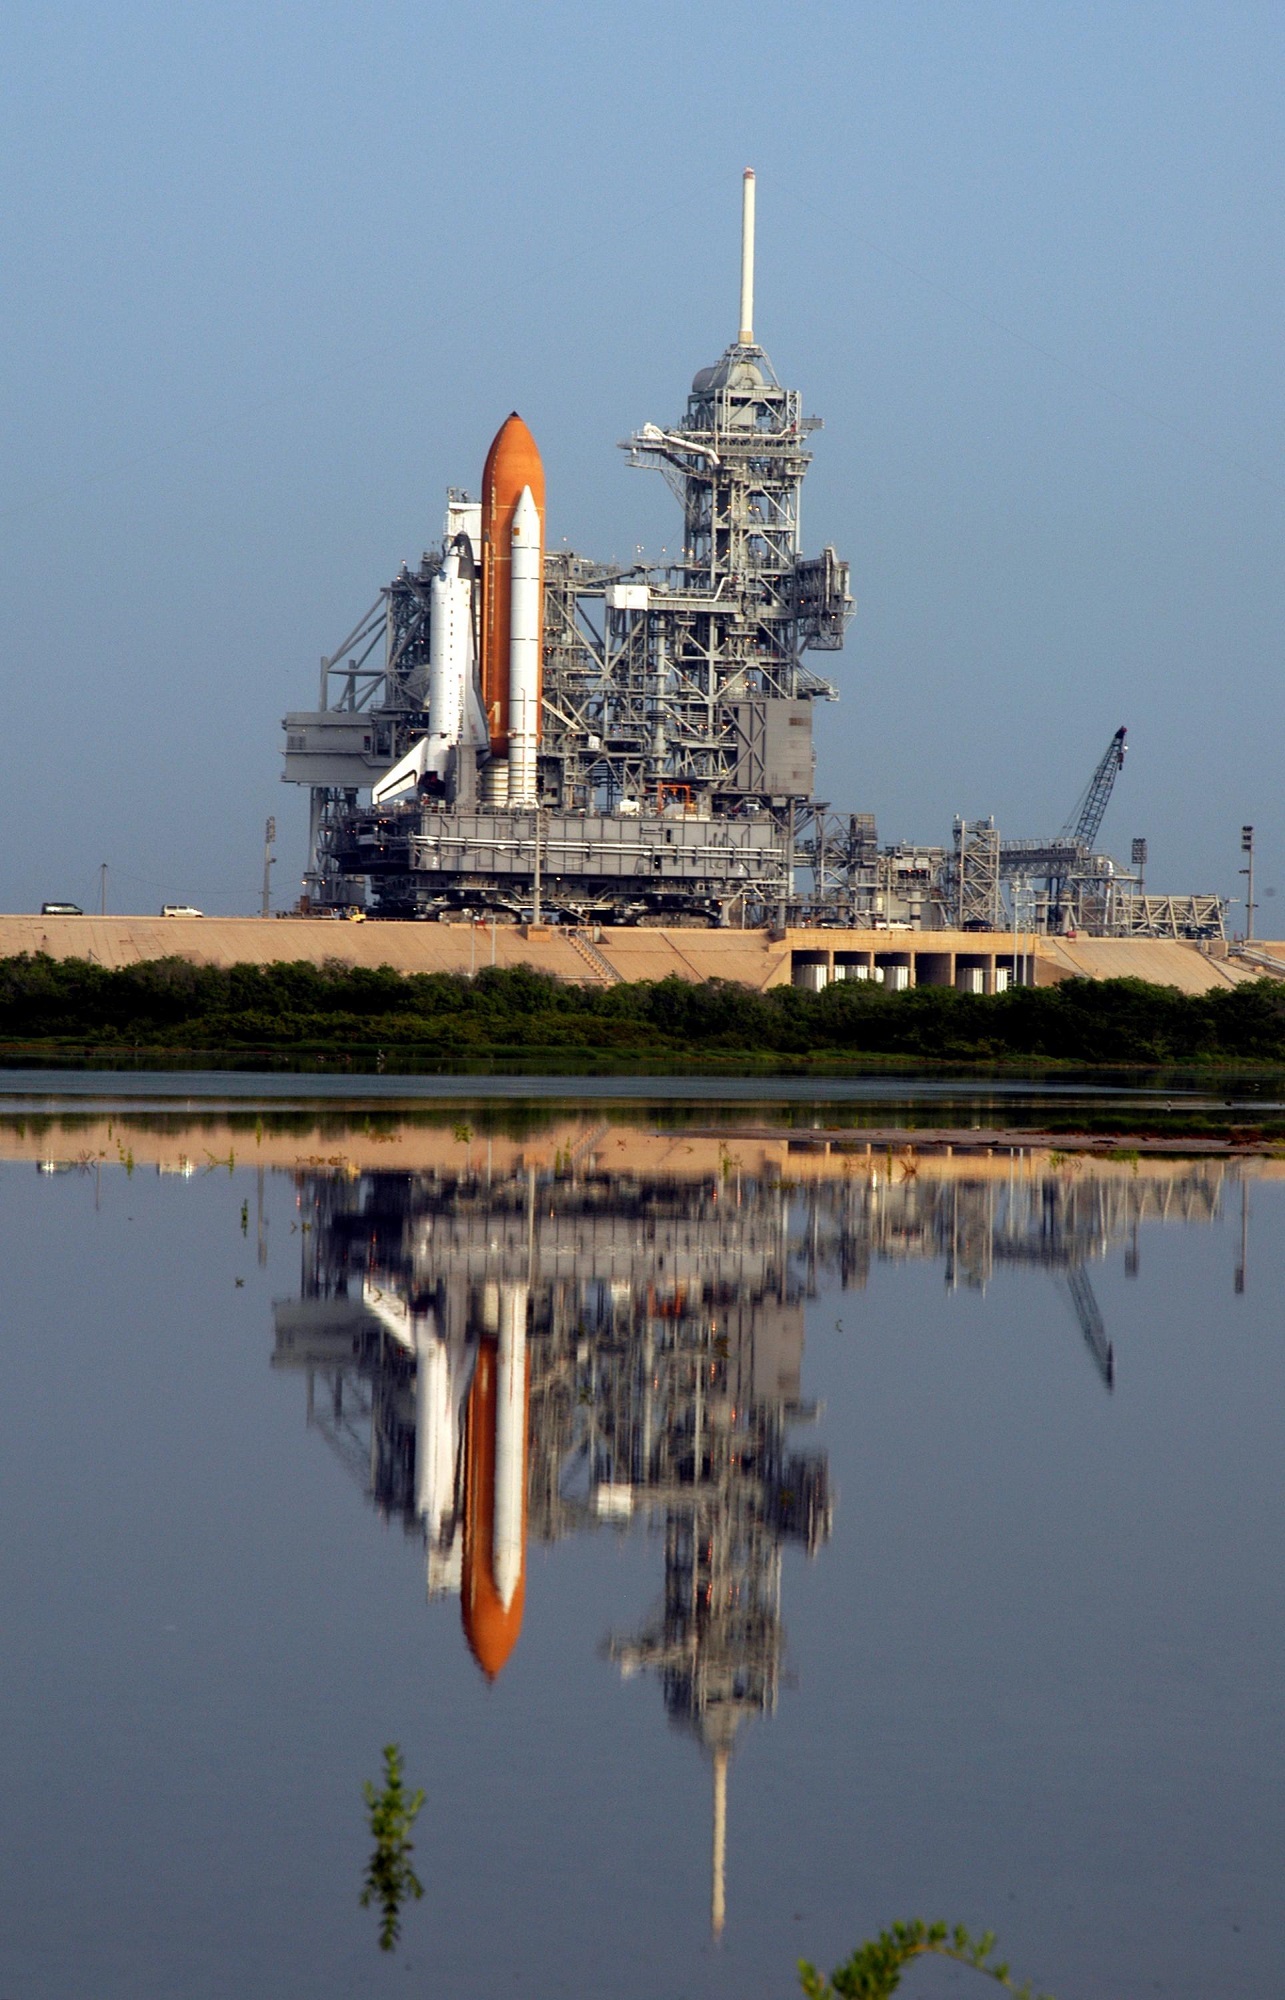 Atlantis space shuttle launch photo